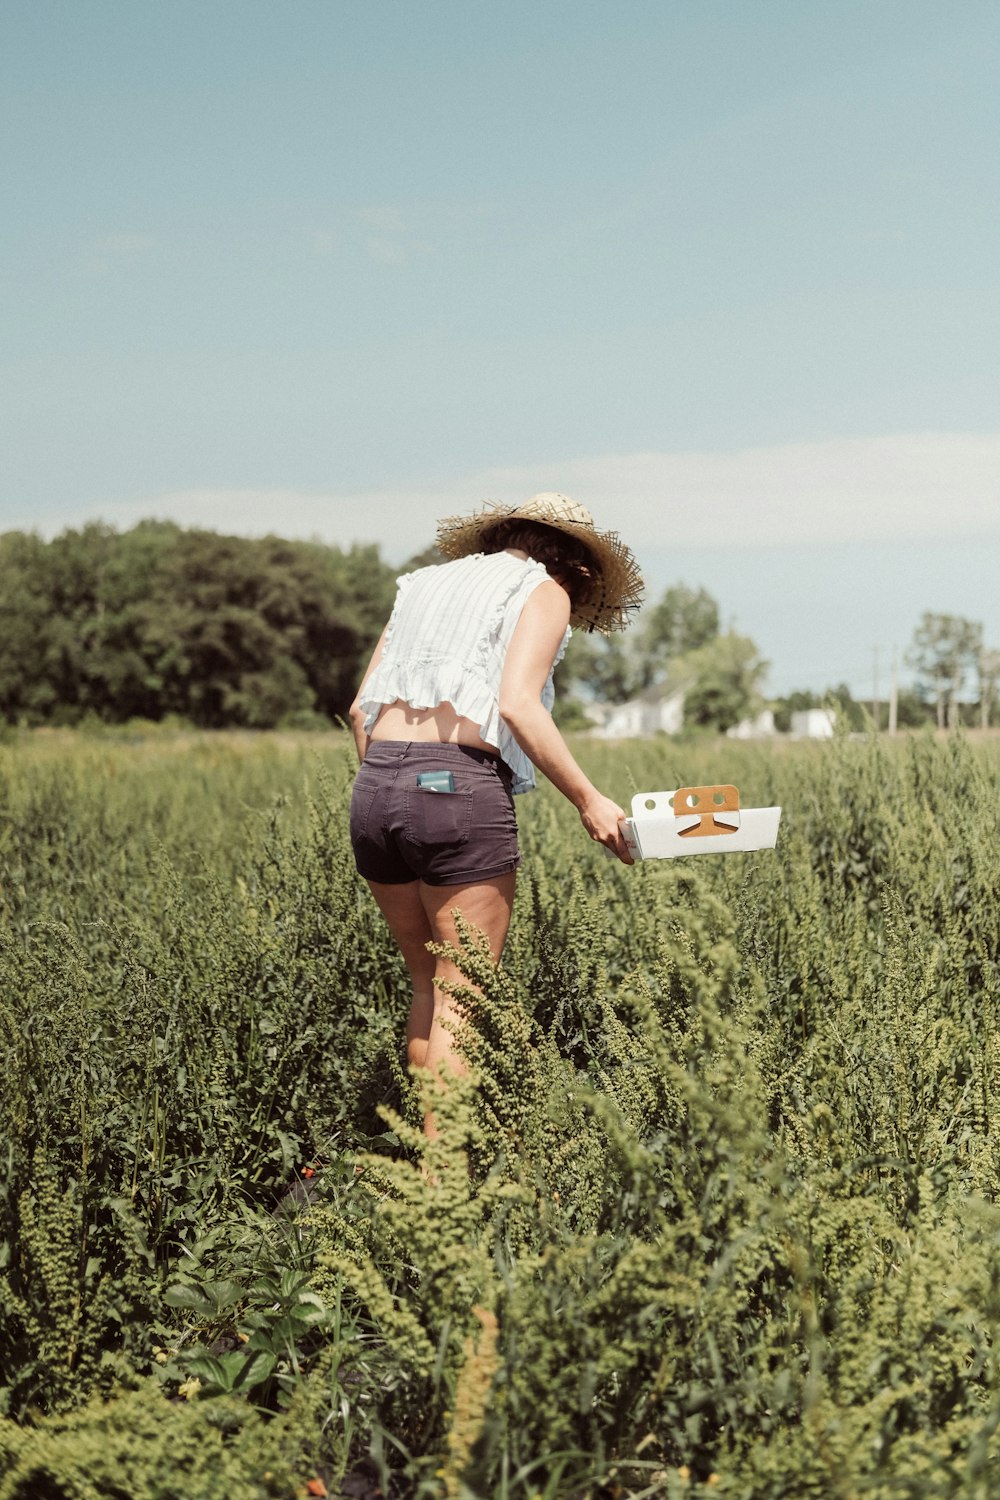 woman standing on grass field